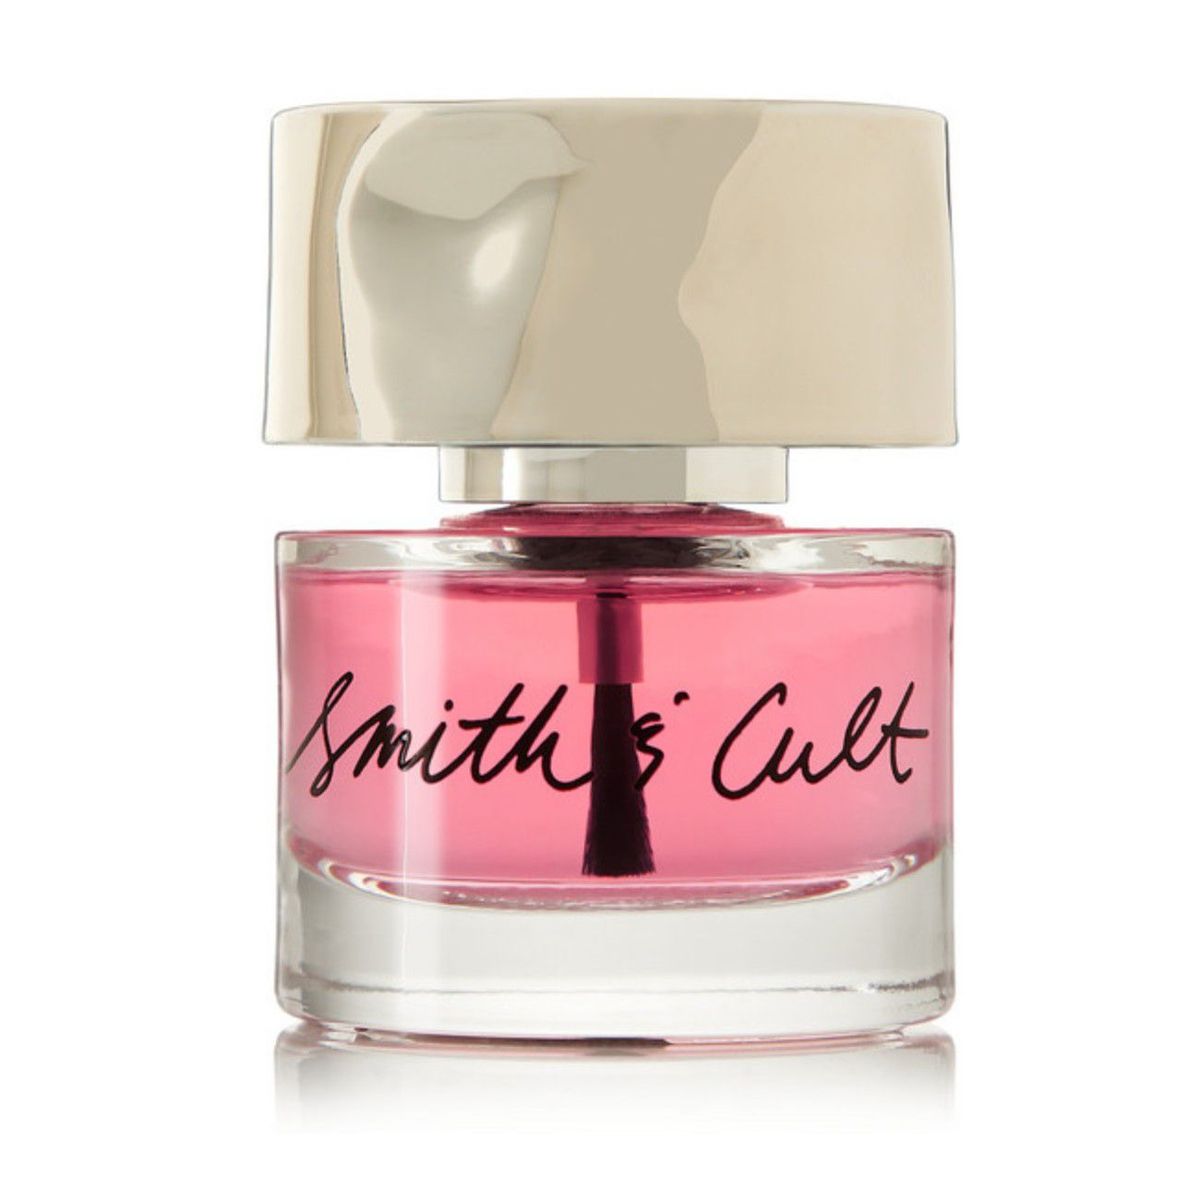 Bottiglia di base coat Smith & Cult rosa pallido su sfondo bianco.